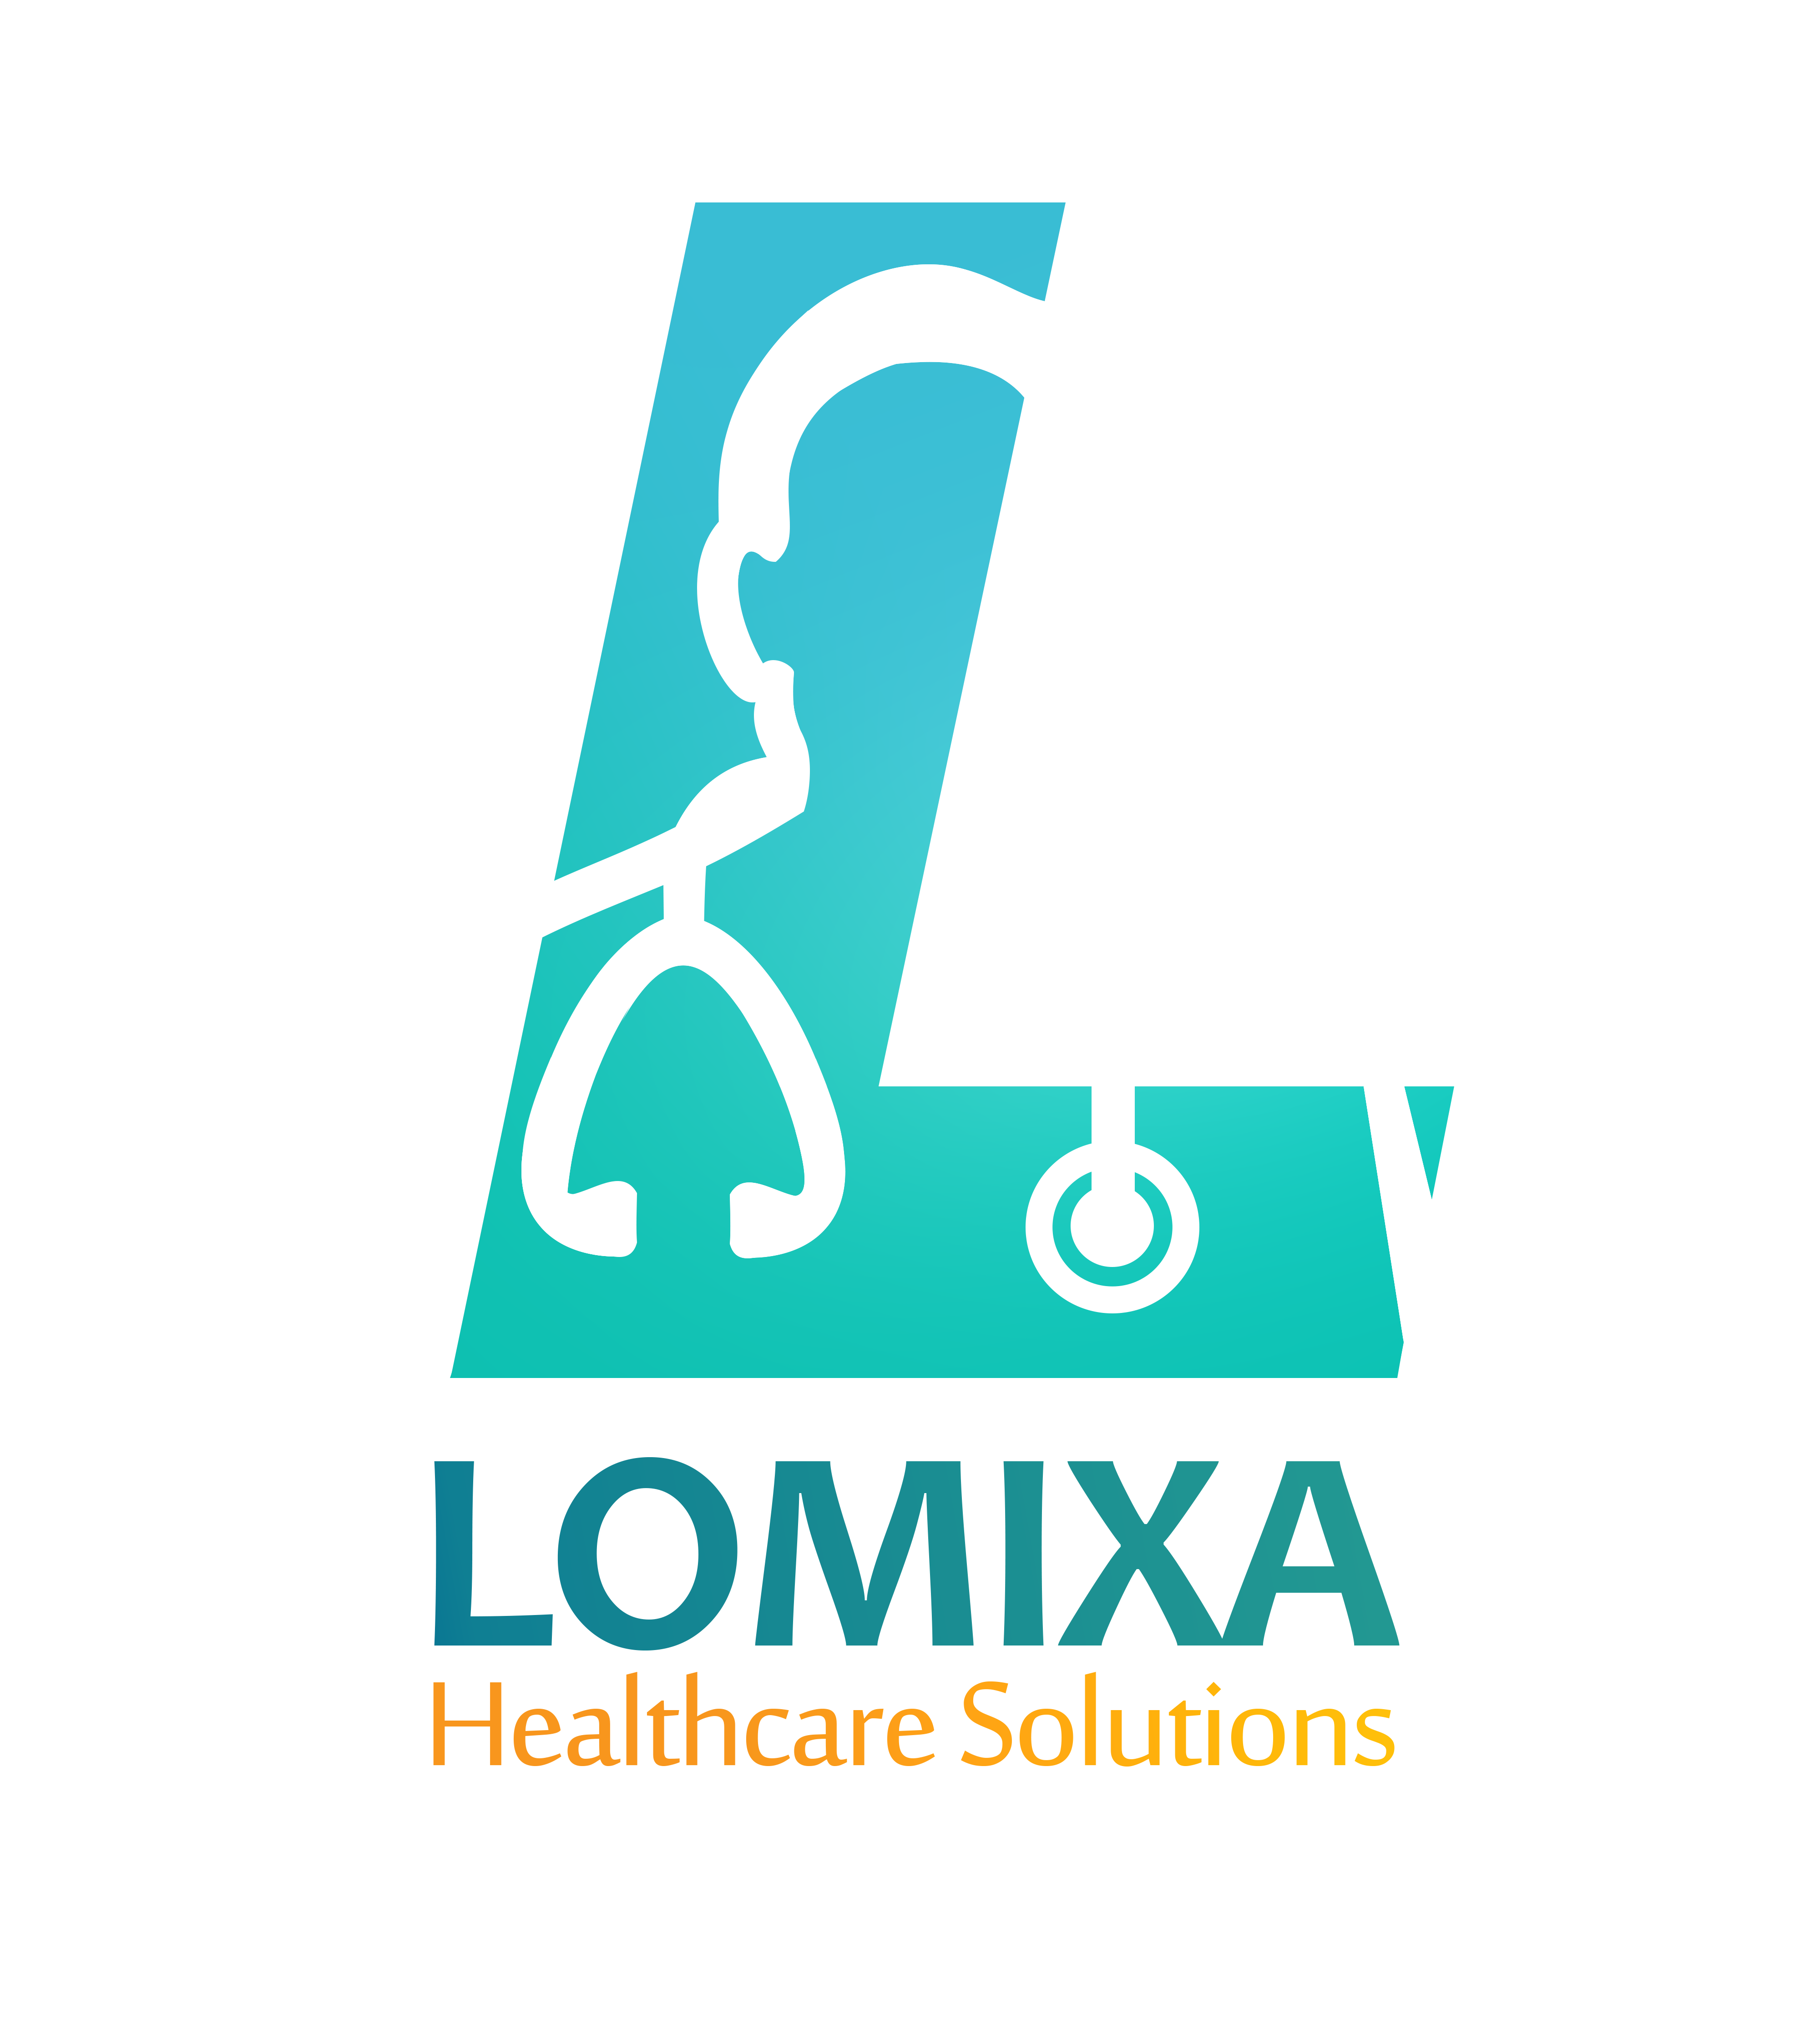 Lomixa-احجز طبيبك واطلب دواك و معملك او اشعة و تمريض او اسعاف